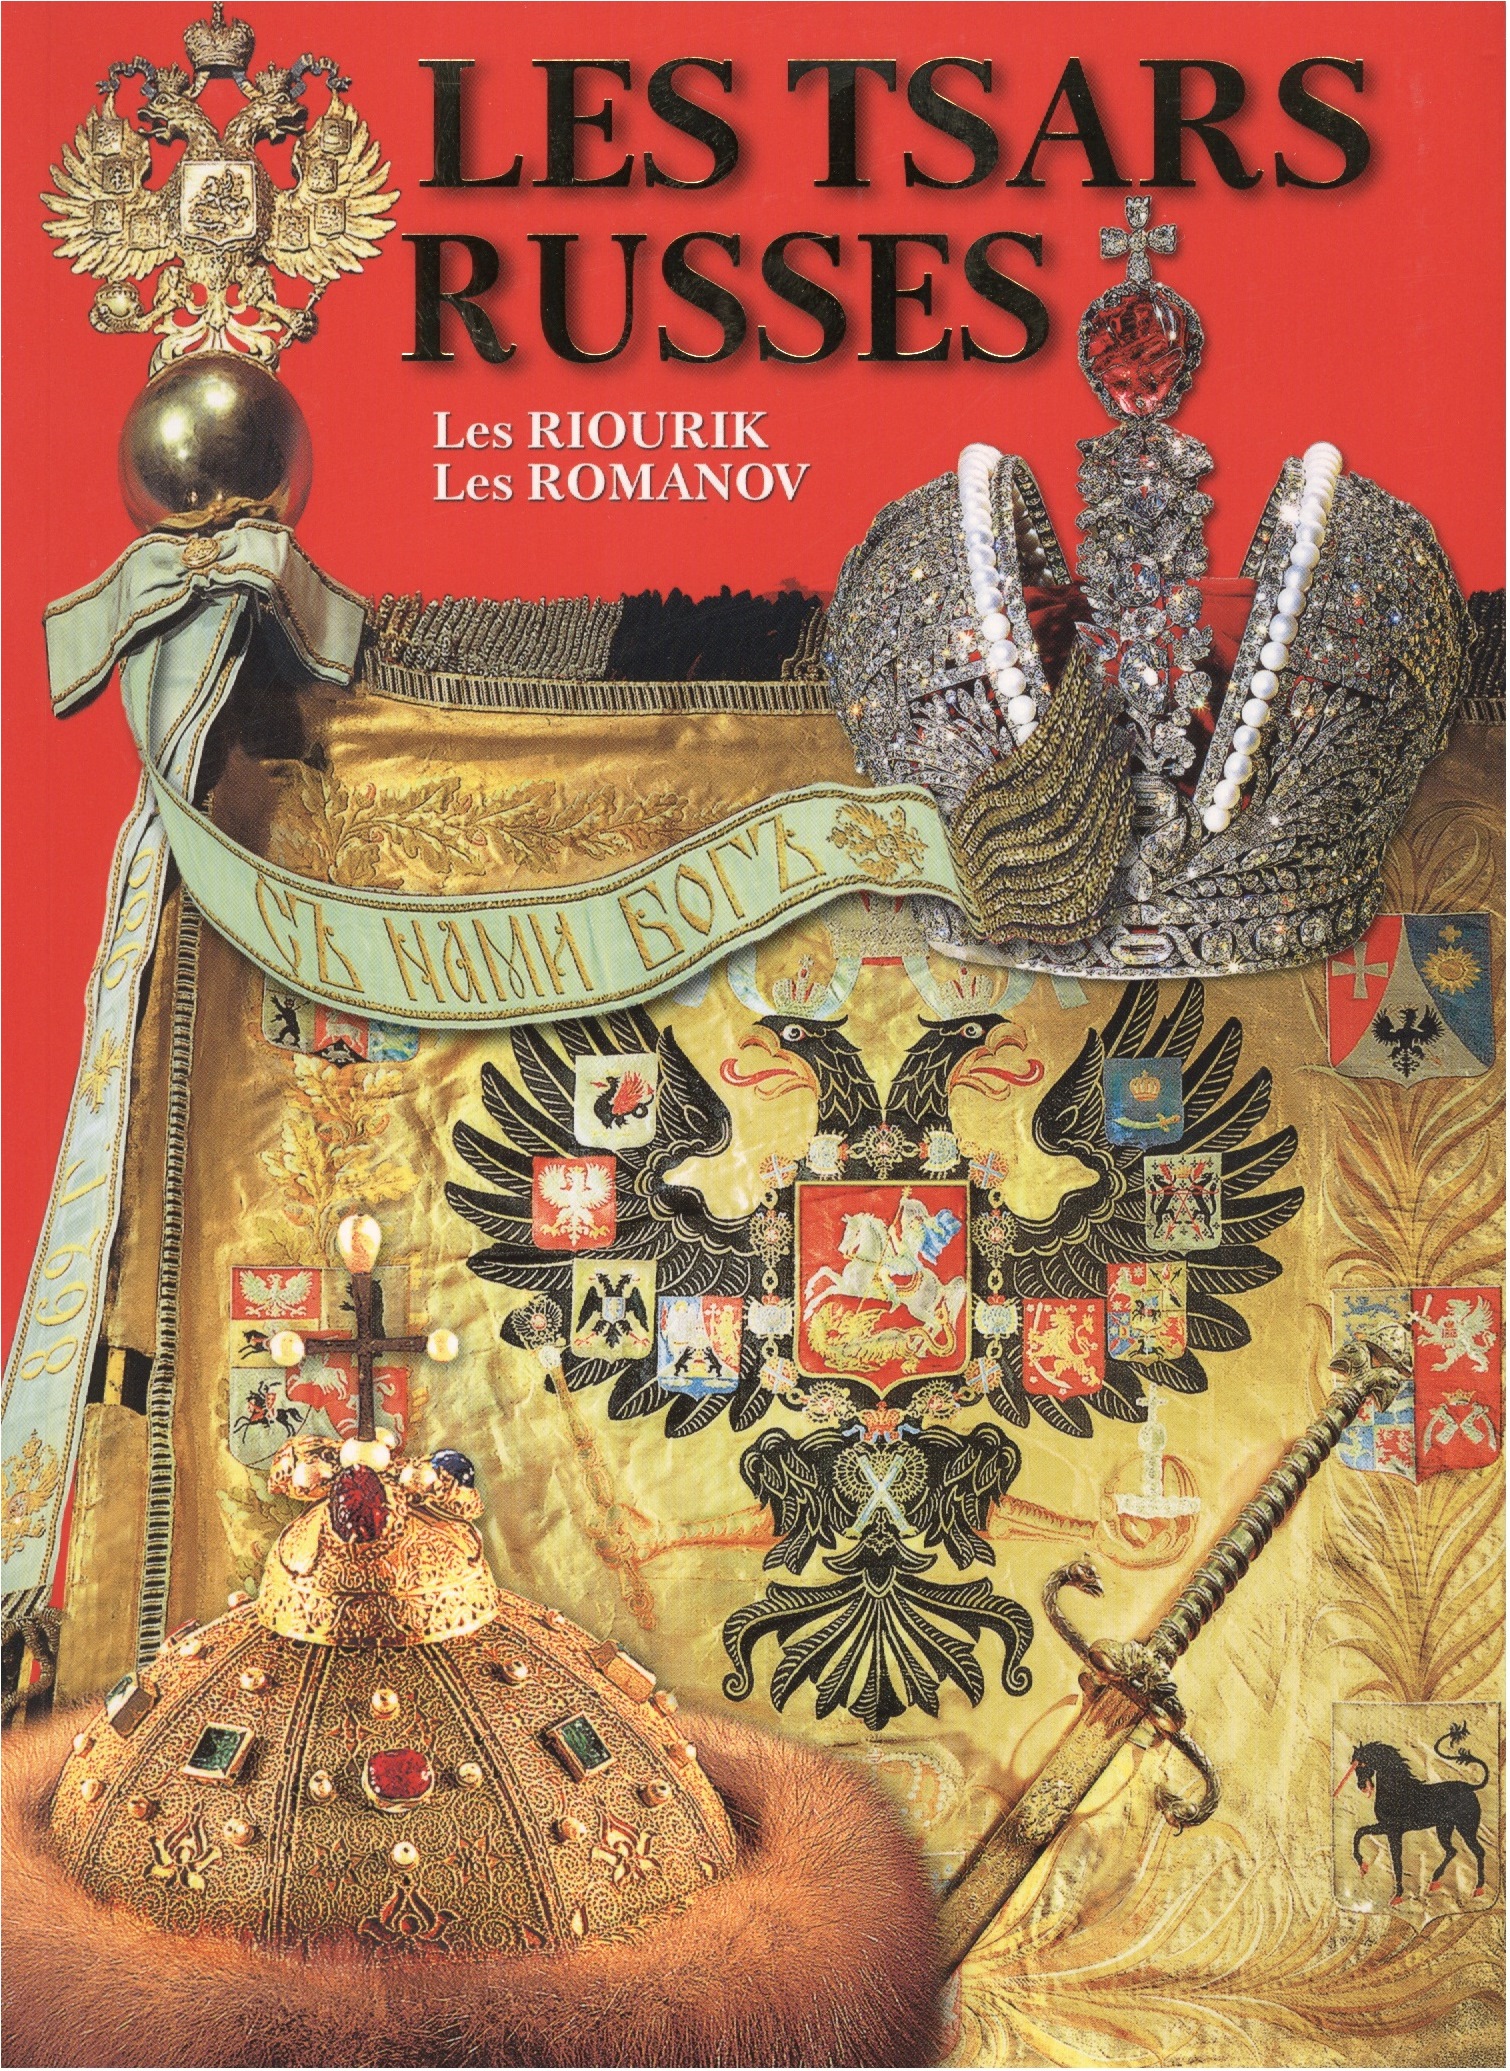 Antonov B. Les Tsars Russes antonov b russian tsars русские цари альбом на английском языке футляре